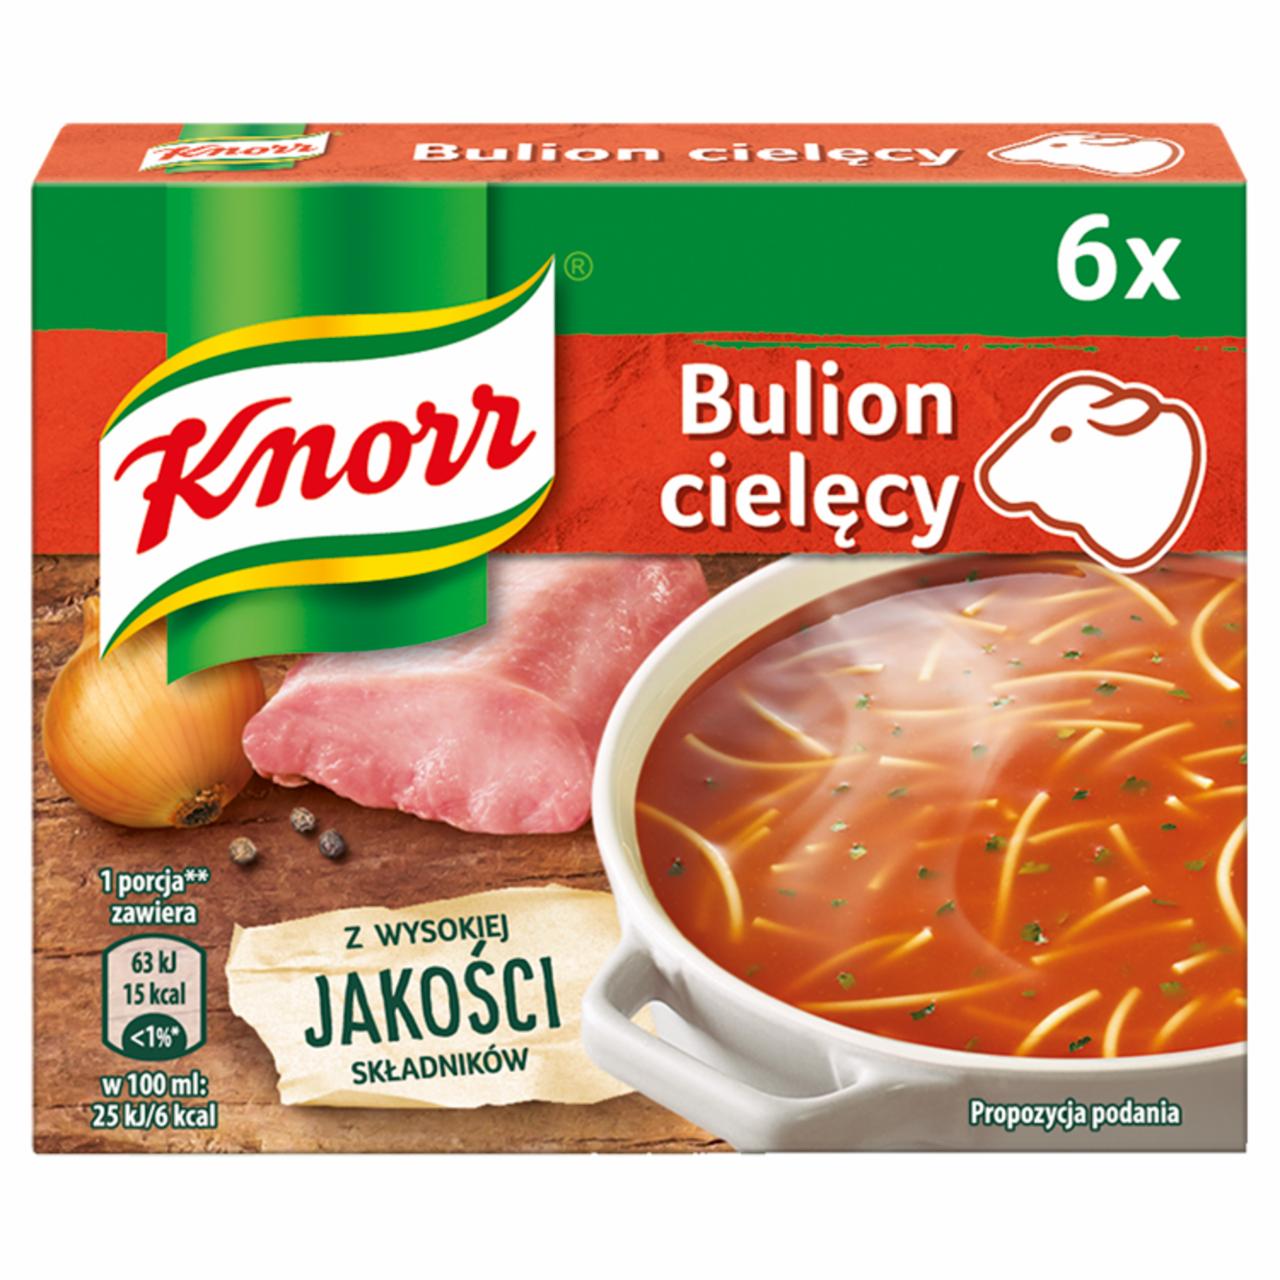 Zdjęcia - Knorr Bulion cielęcy 60 g (6 x 10 g)